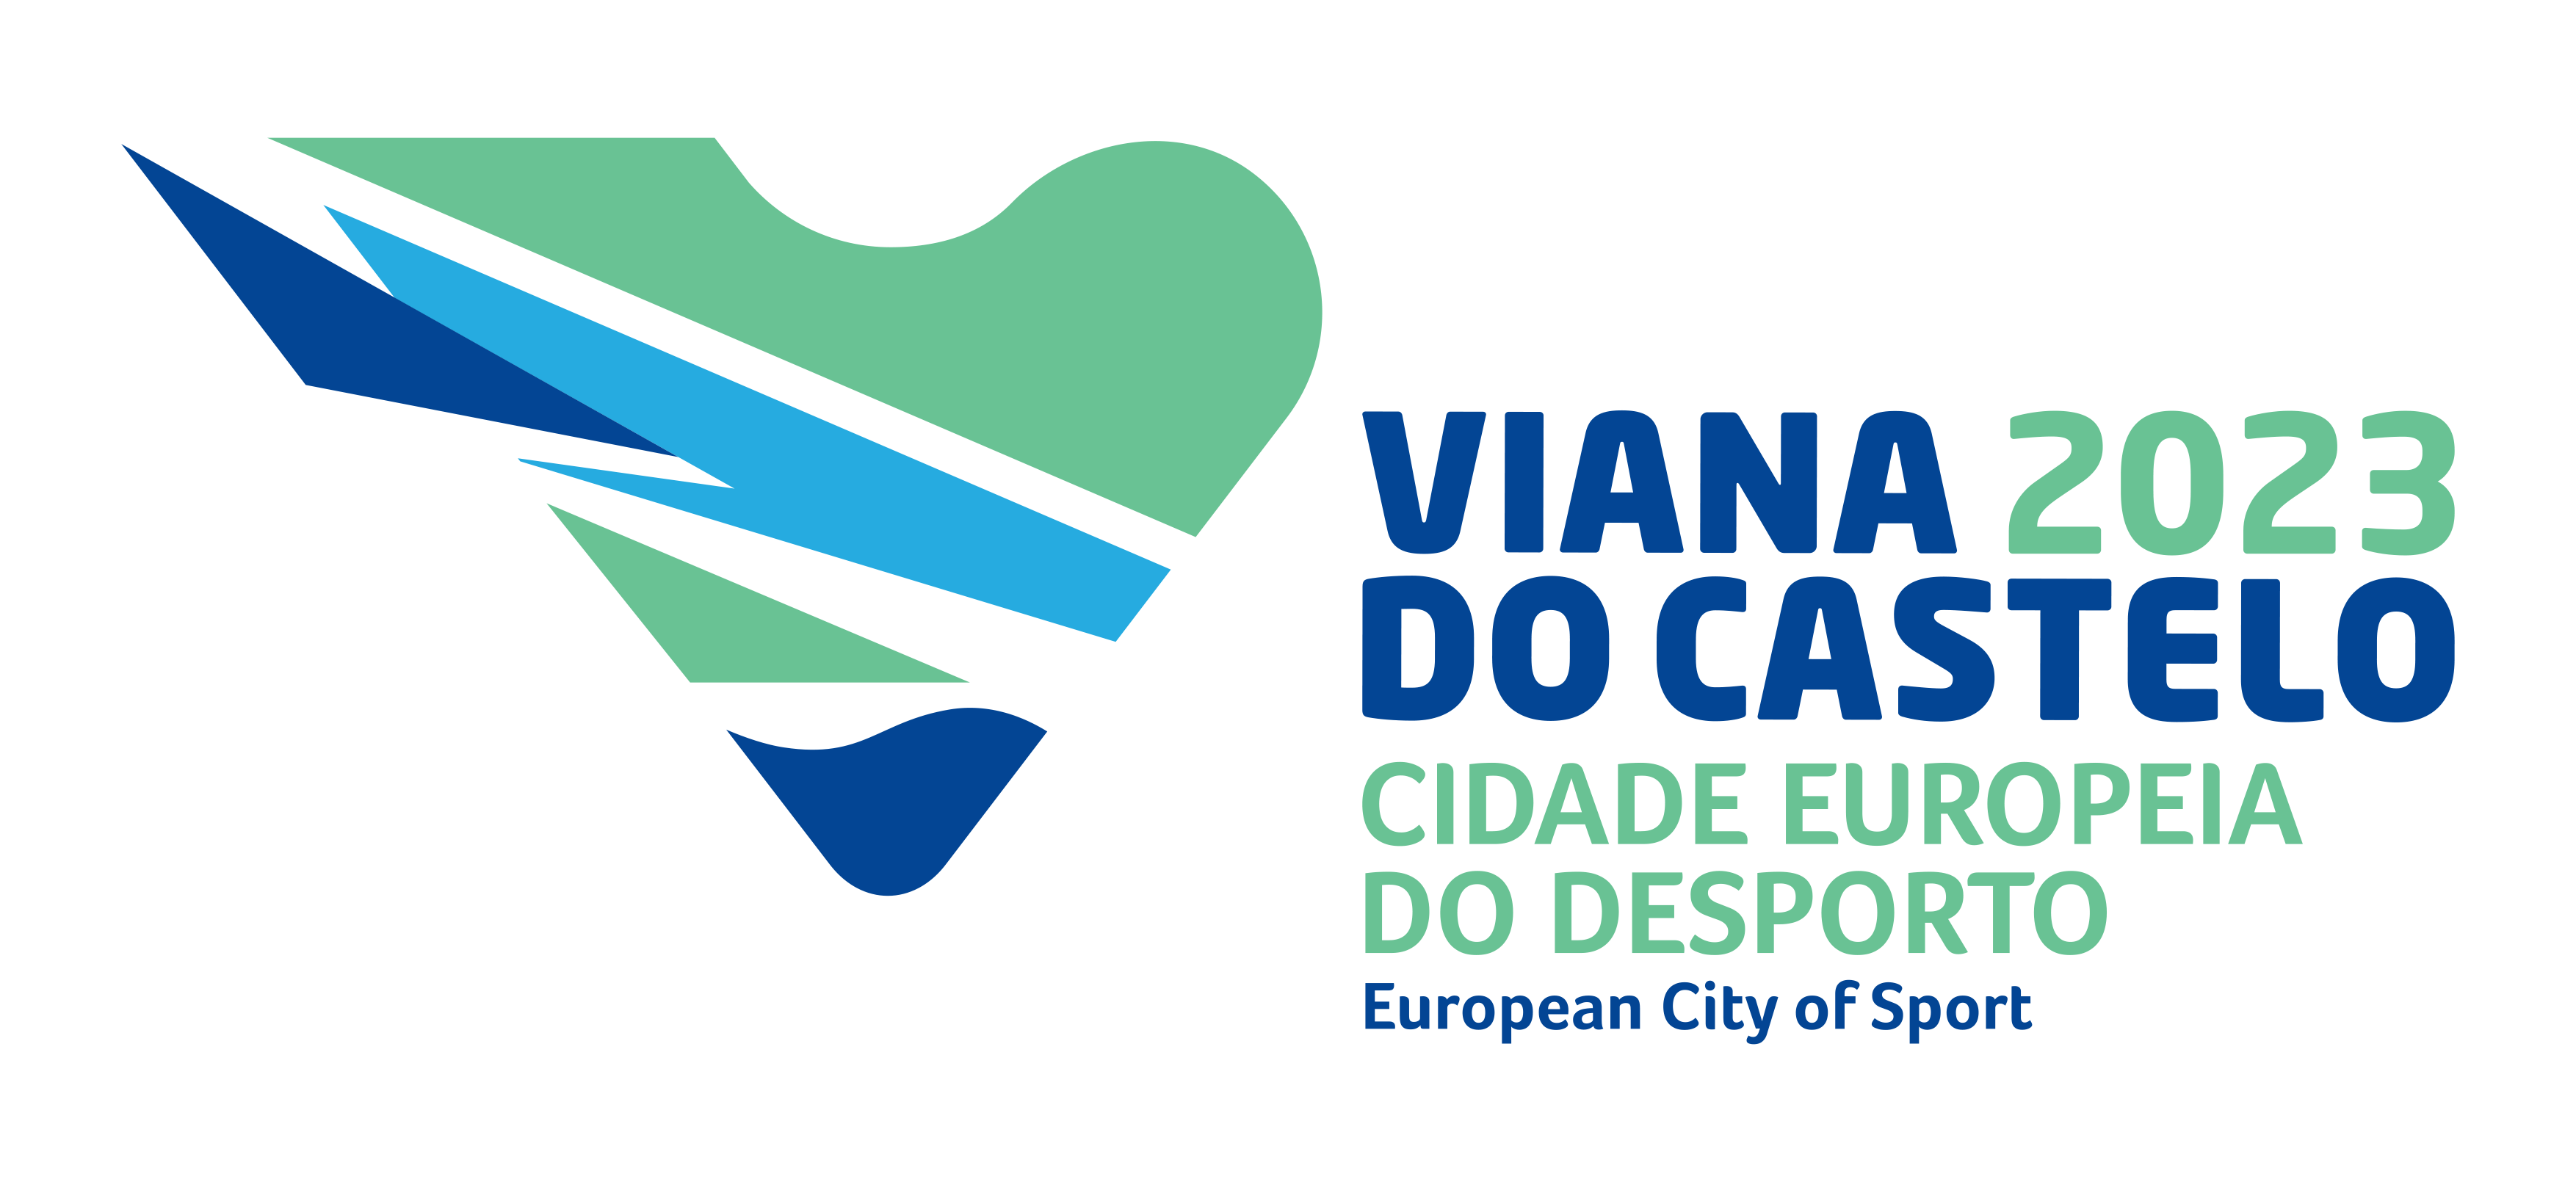 Viana do Castelo Cidade Europeia do Desporto 2023